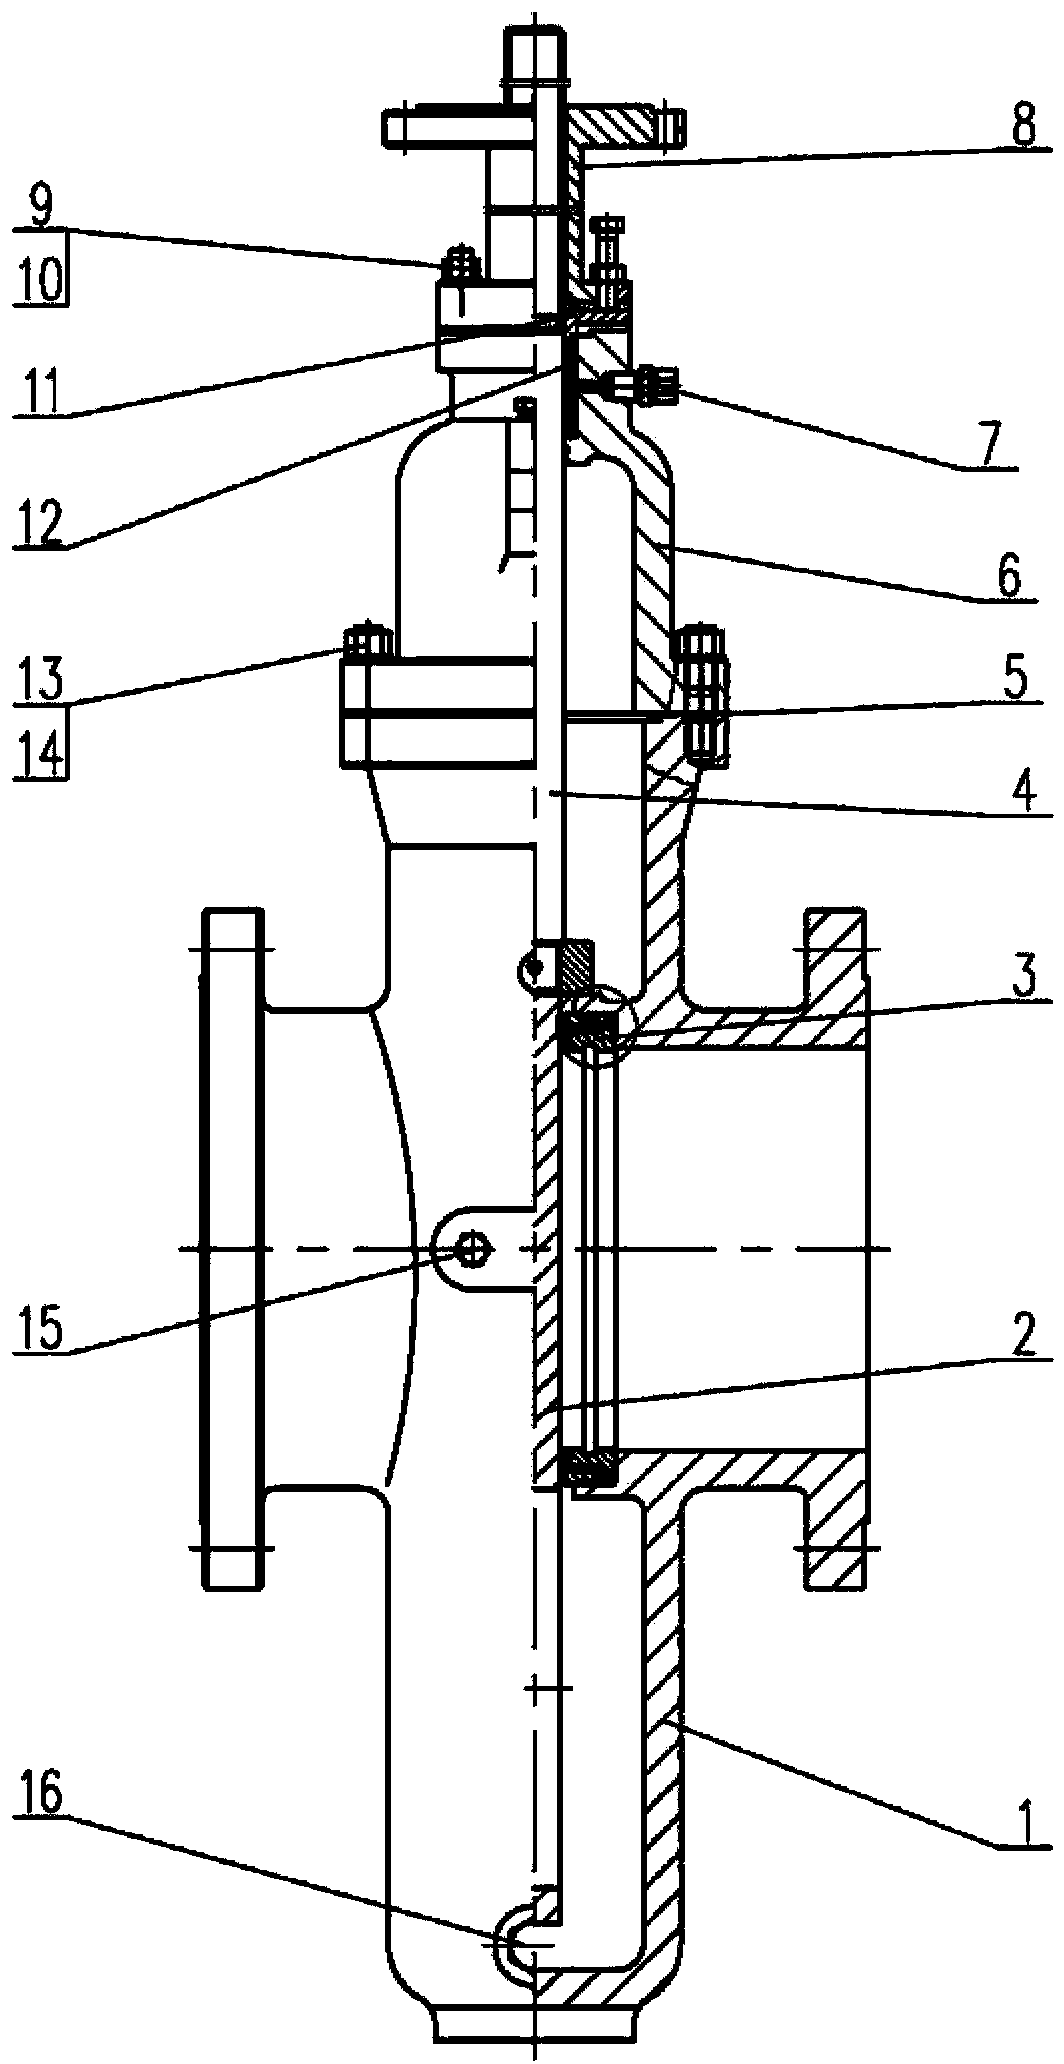 Dual soft sealing flat gate valve